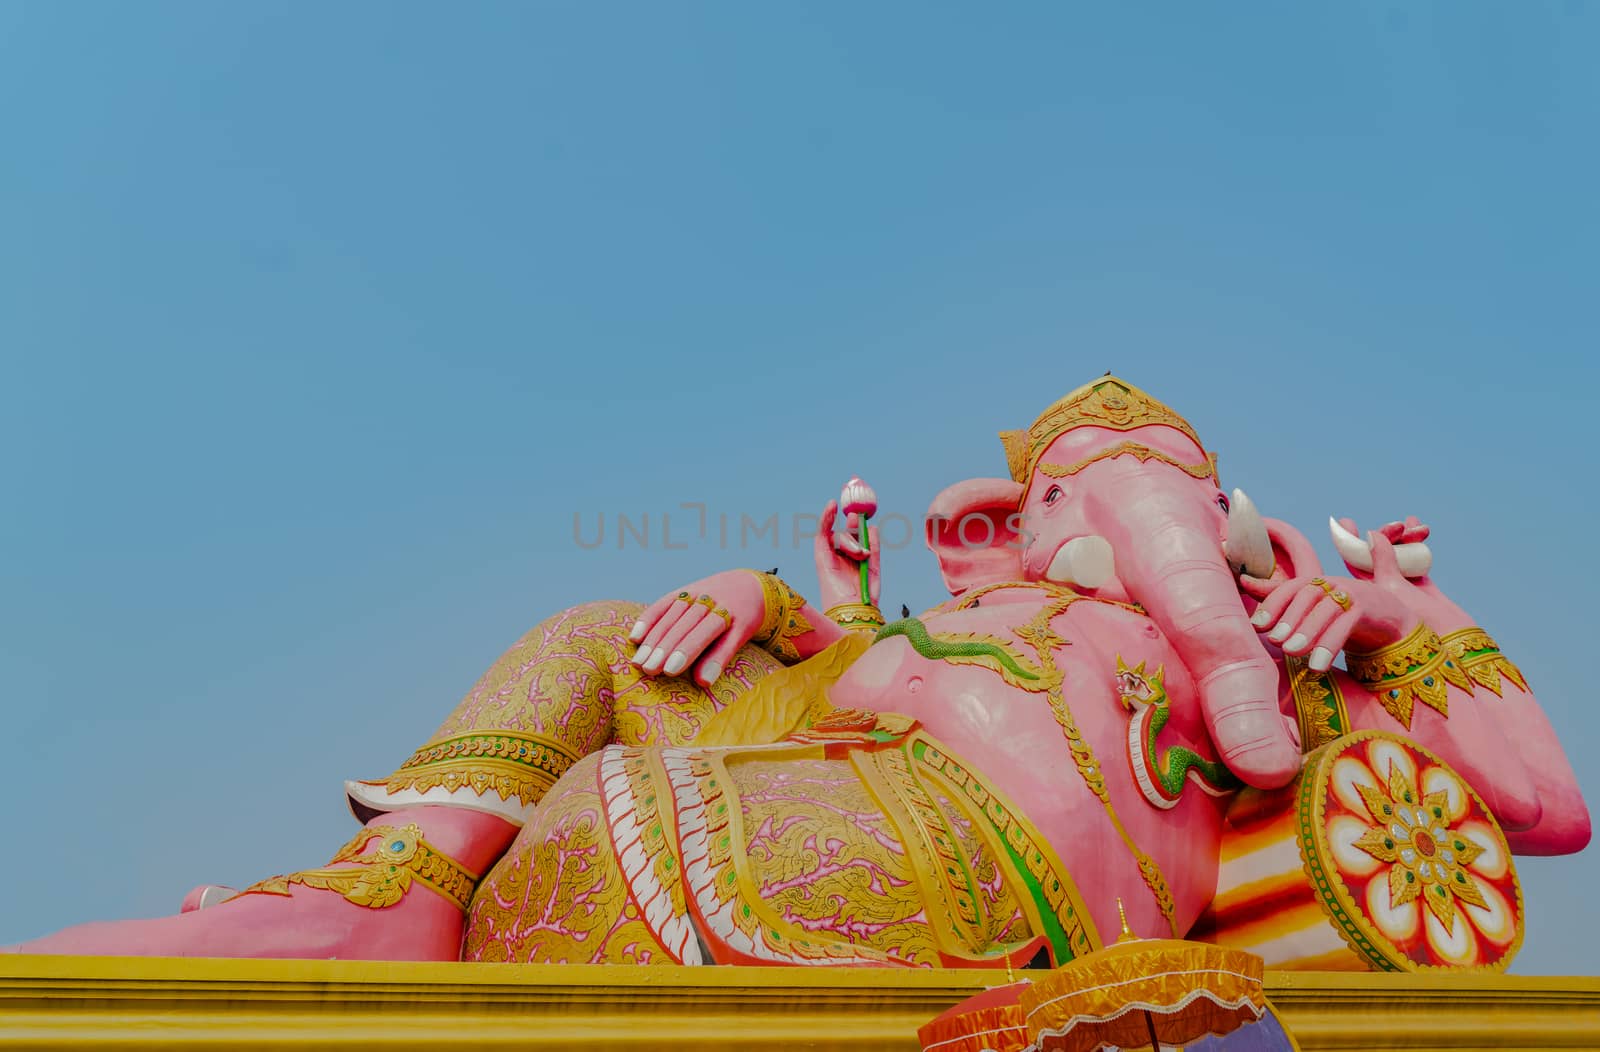 Ganesh Elephant god in Hindu isolated on white background.